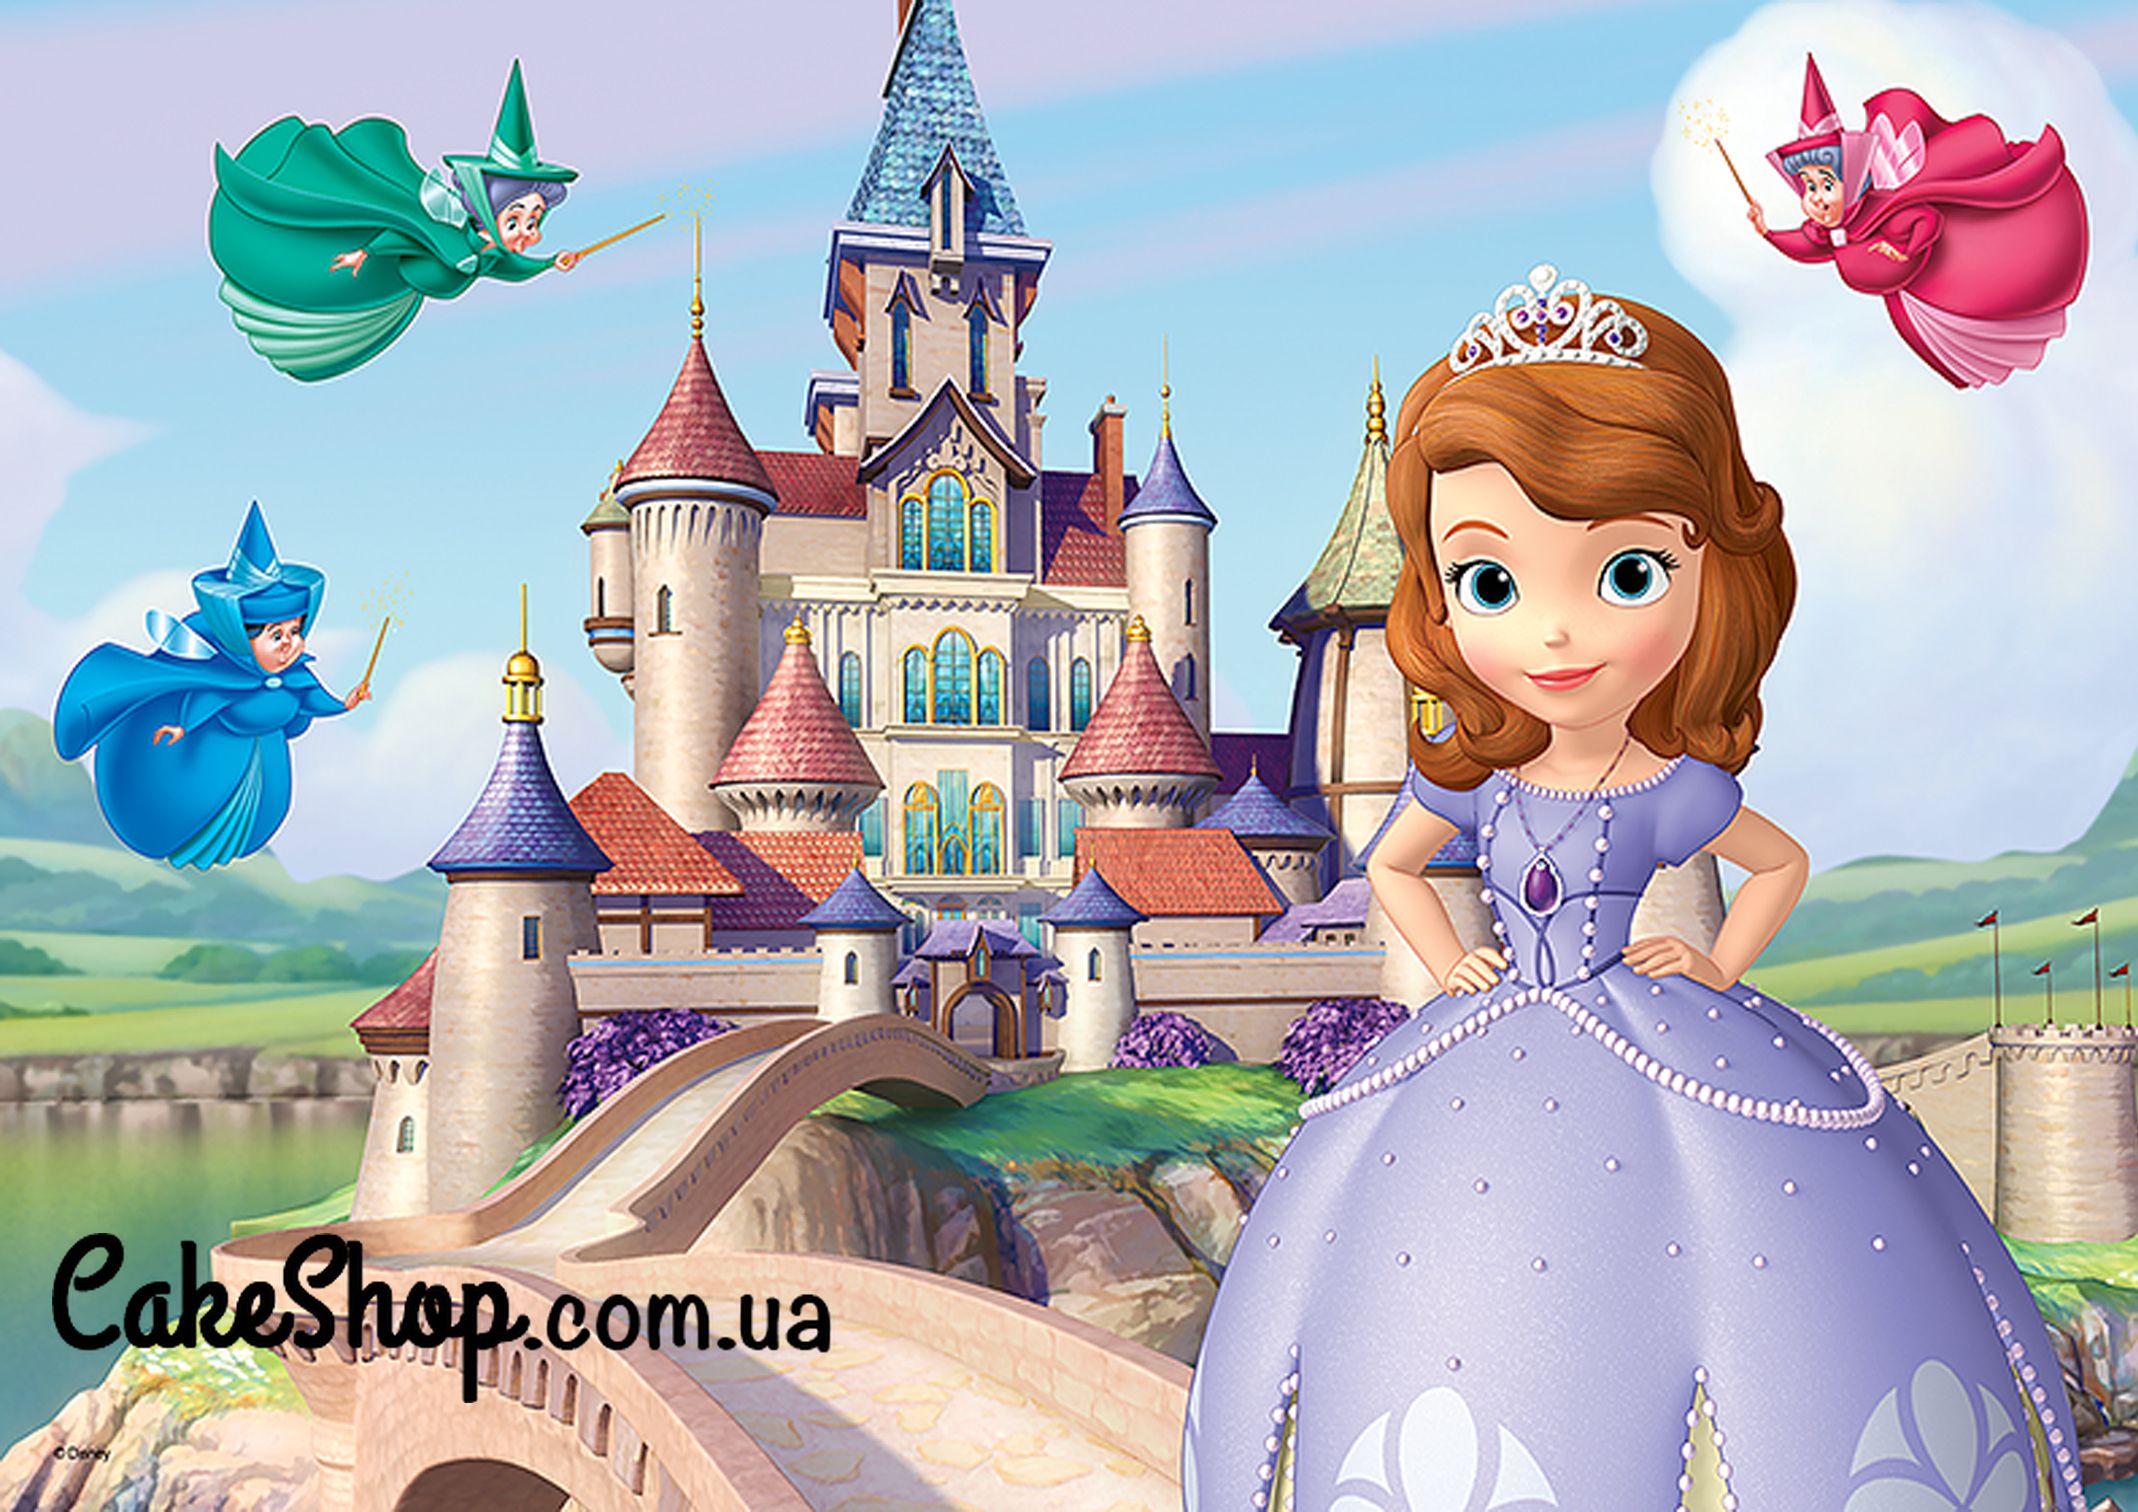 ⋗ Сахарная картинка Принцесса София 5 купить в Украине ➛ CakeShop.com.ua, фото